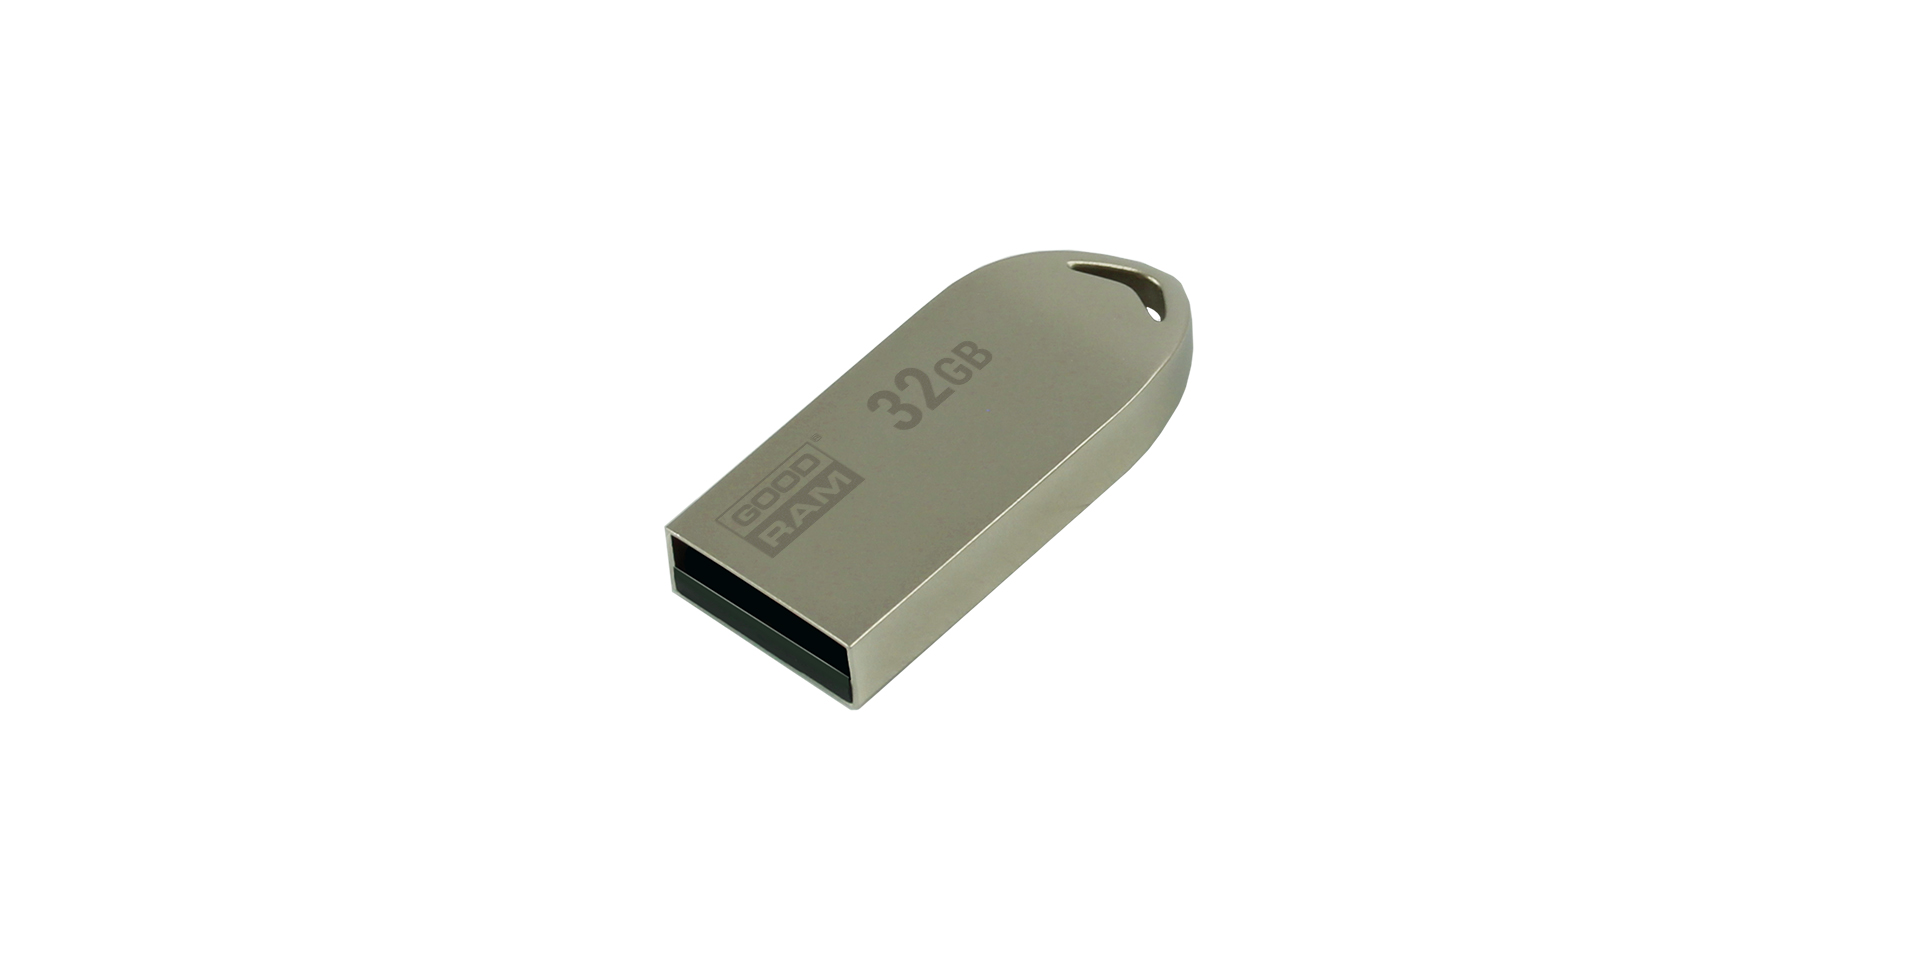 UEA2 flash drive